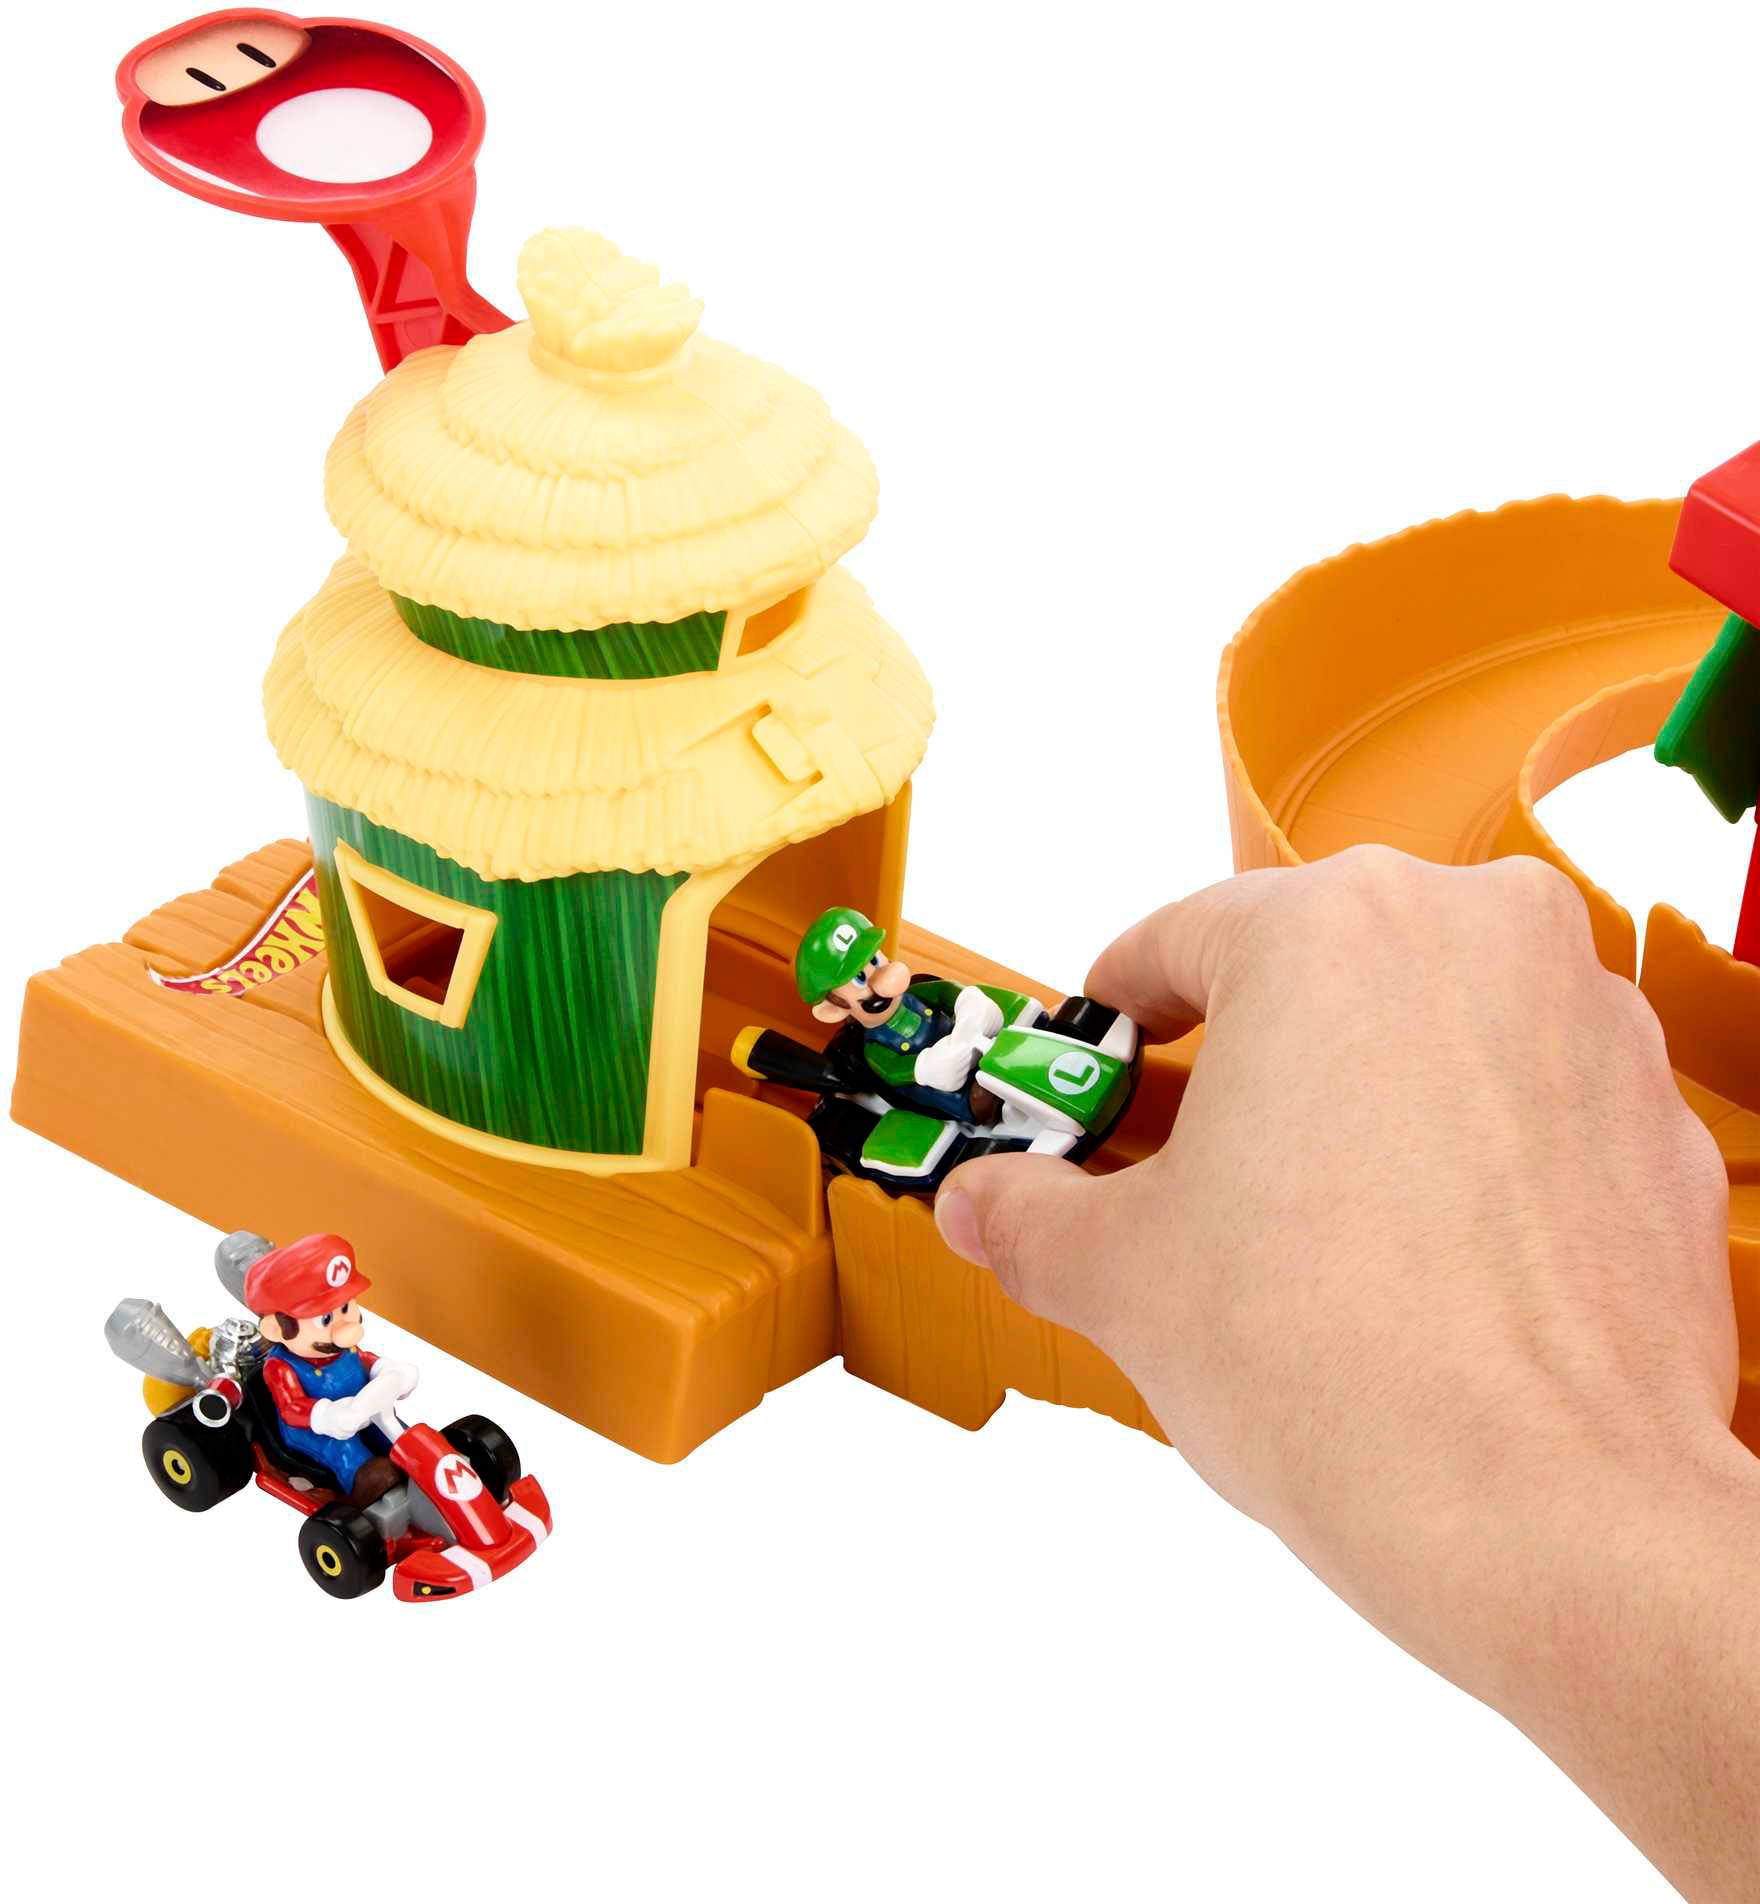 Hot Wheels Autorennbahn »Super Mario Bros. Dschungel-Königreich Rennstrecke«, mit Mario Die-Cast-Spielzeugauto